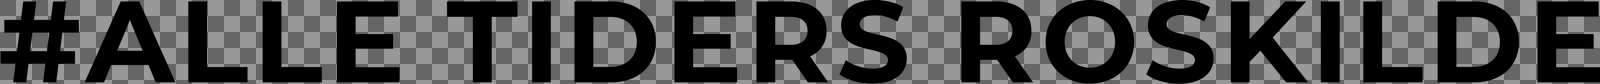 RK   Logo   RGB   17 ATR